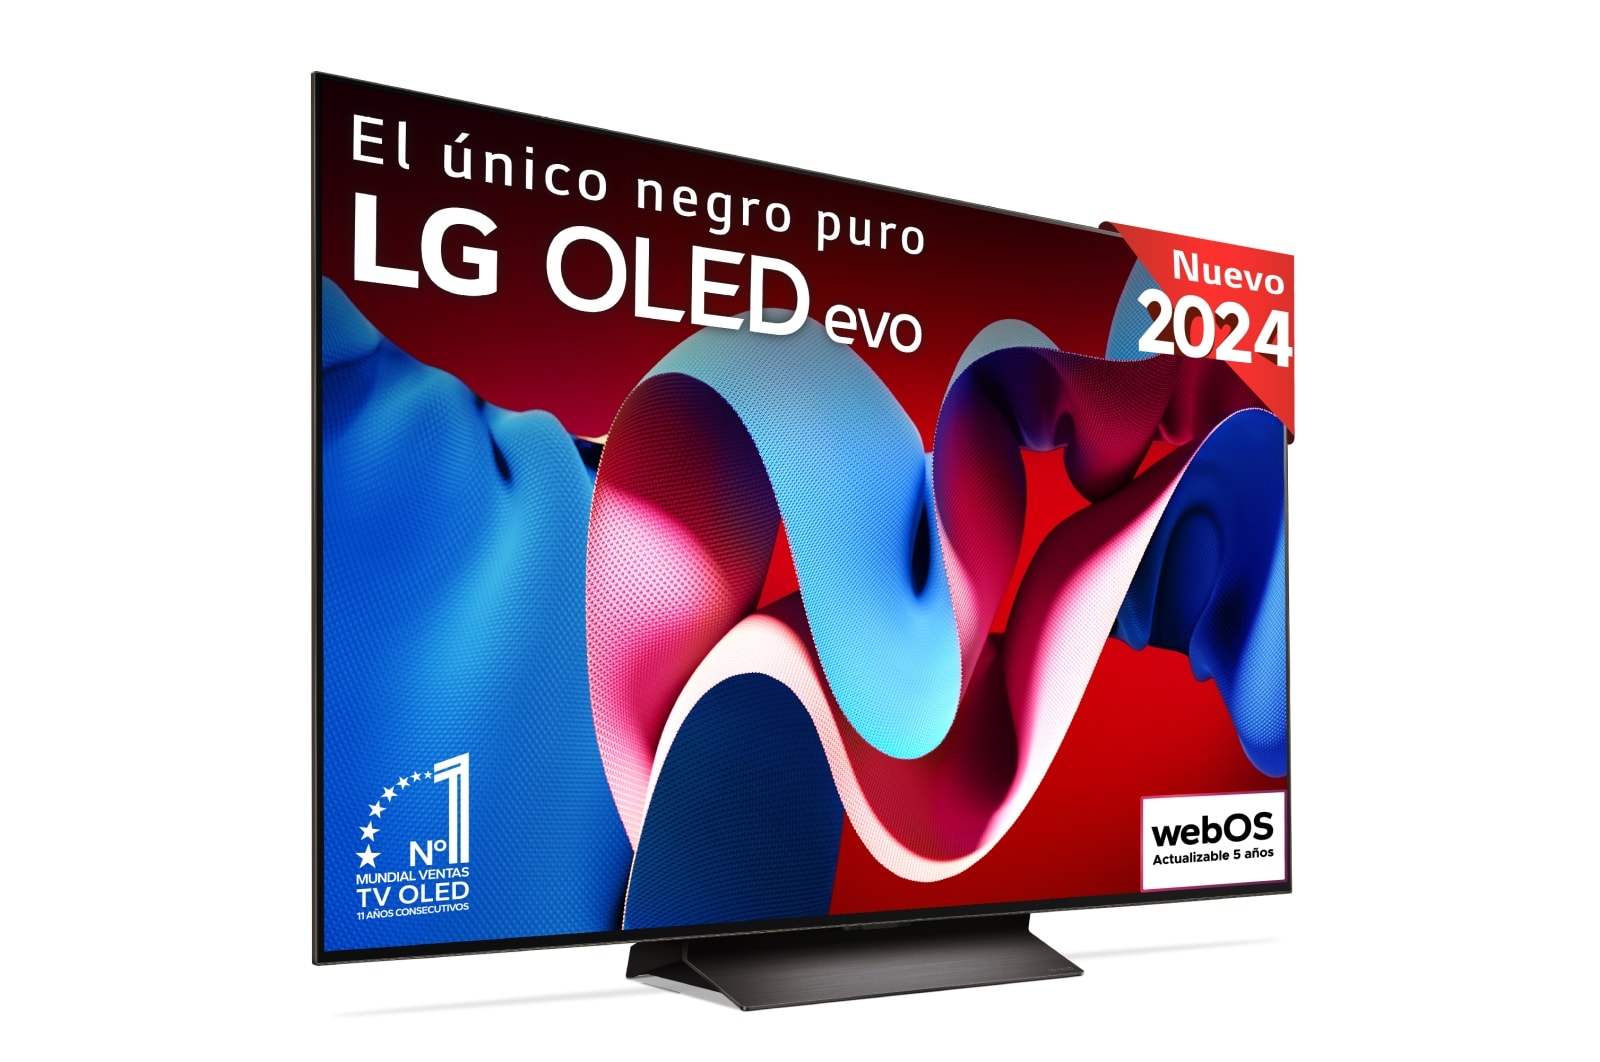 Vista frontal con la televisión LG OLED evo AI, la OLED C4, el logotipo de 11 años siendo el número 1 mundial de OLED y el logotipo del programa webOS Re:New en la pantalla, así como la Soundbar debajo